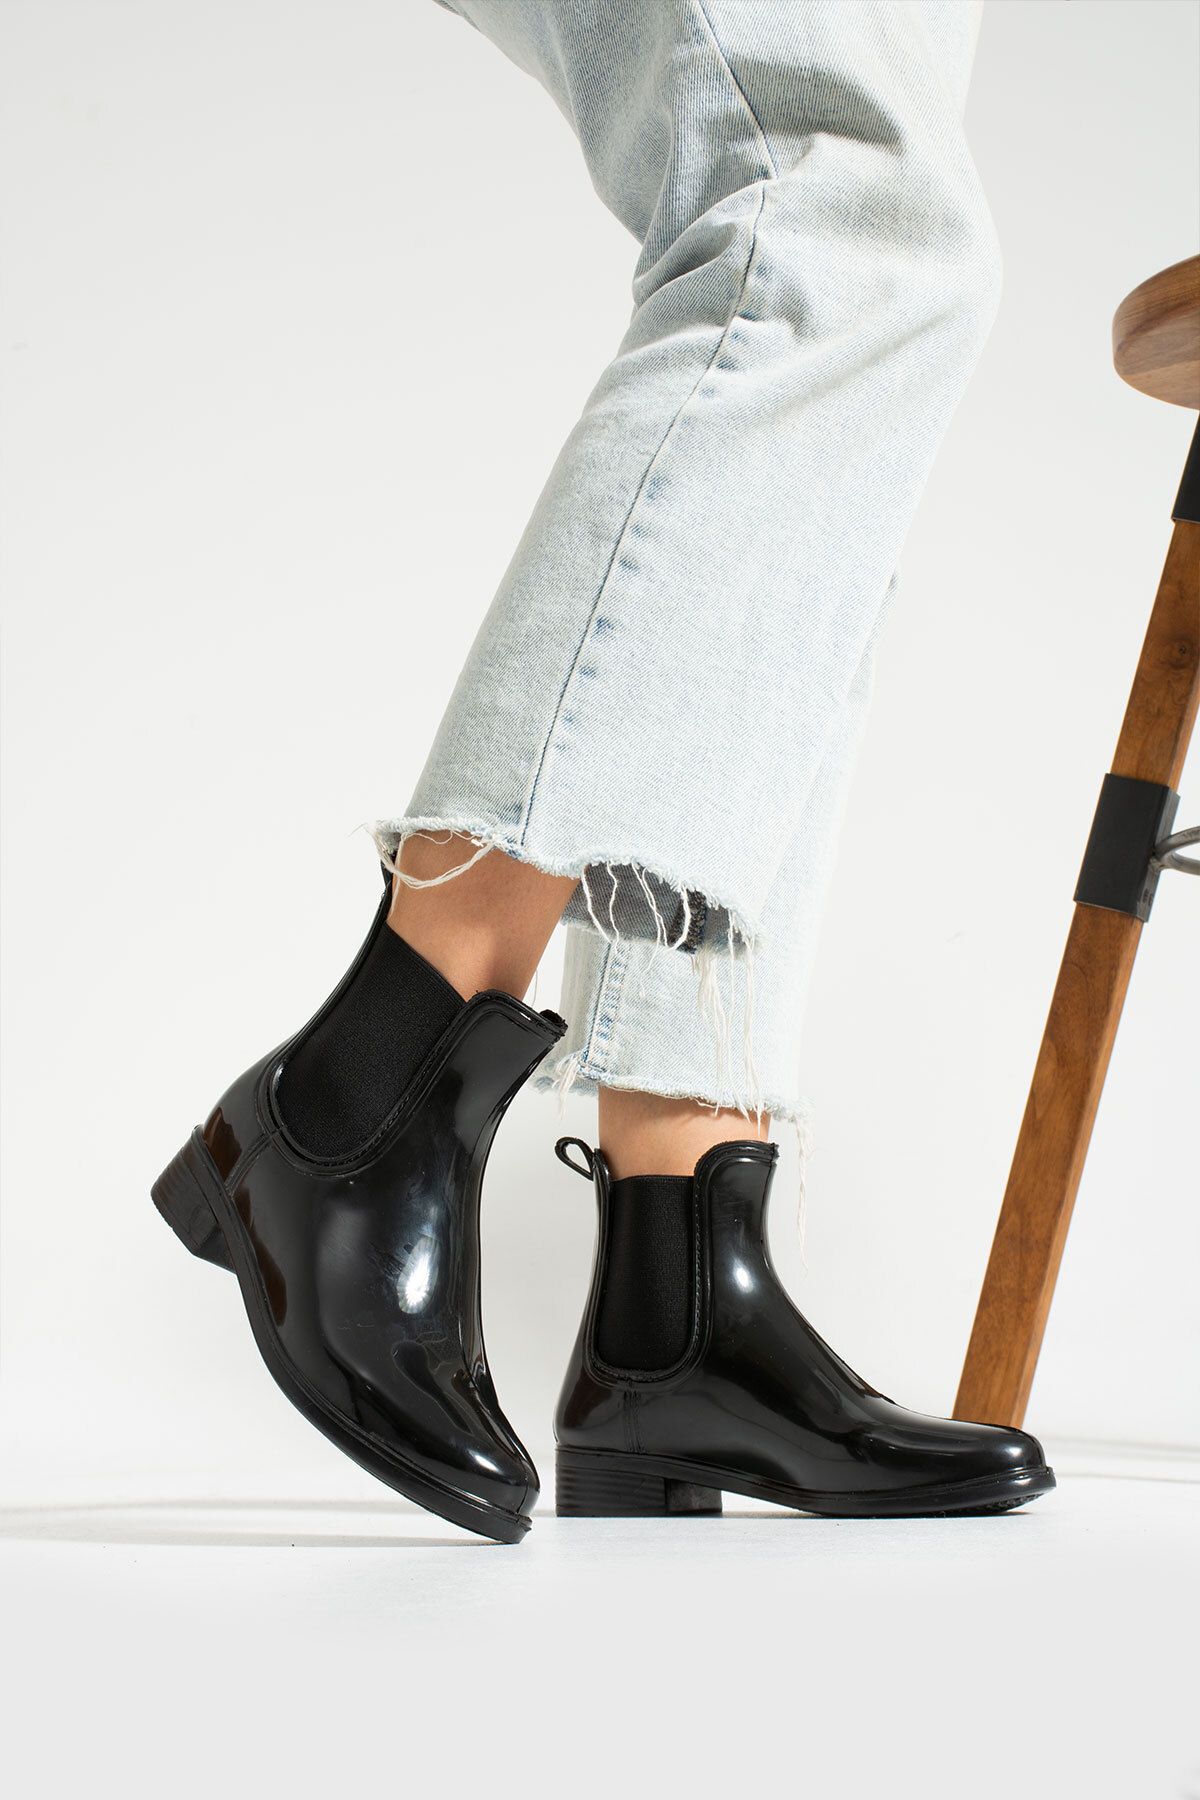 KAOF SHOES Kadın Siyah Yağmur Botu Lastikli Yağmur Çizmesi Kadın Günlük Ayakkabı Kadın Su Geçirmez Yağmur Botu